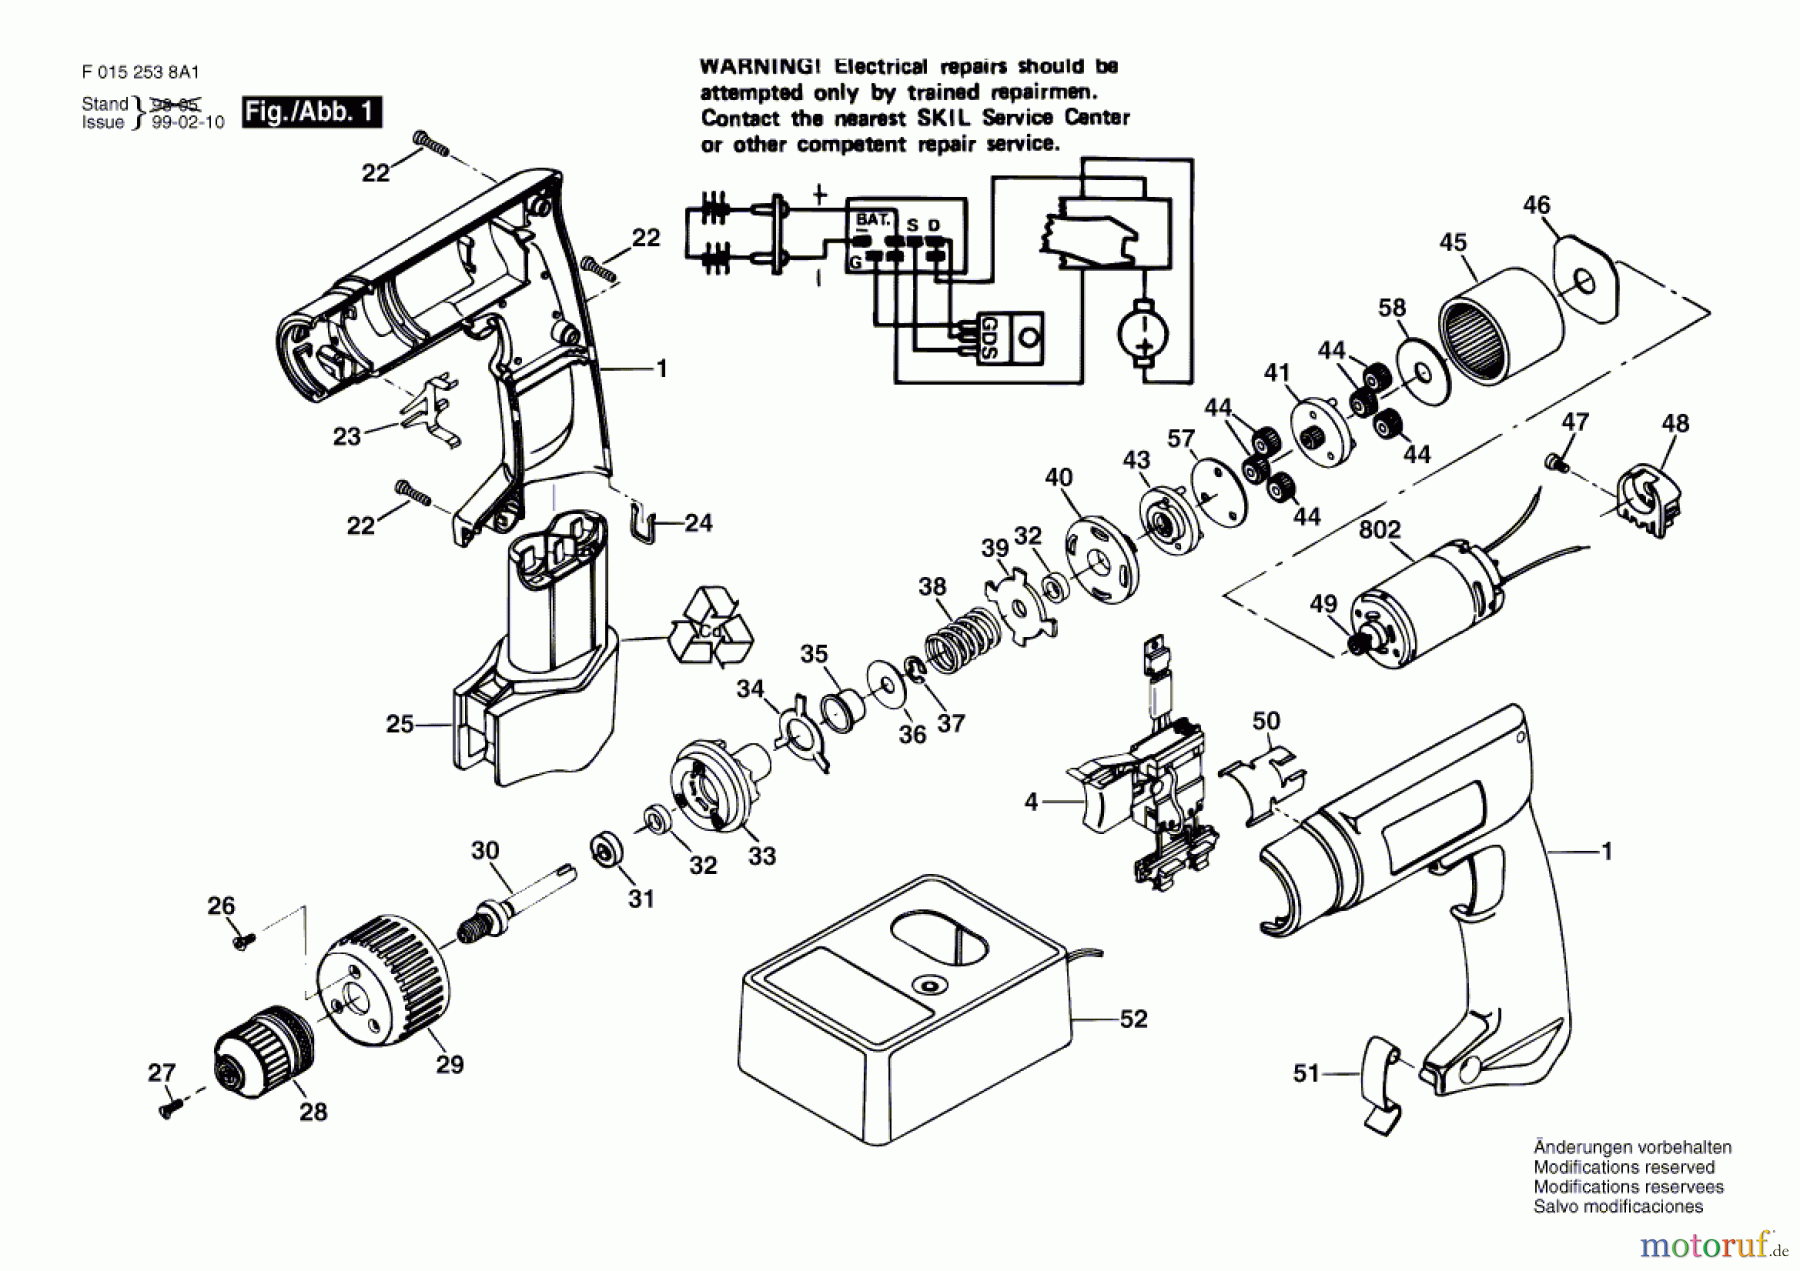  Bosch Werkzeug Bohrschrauber 2538U1 Seite 1